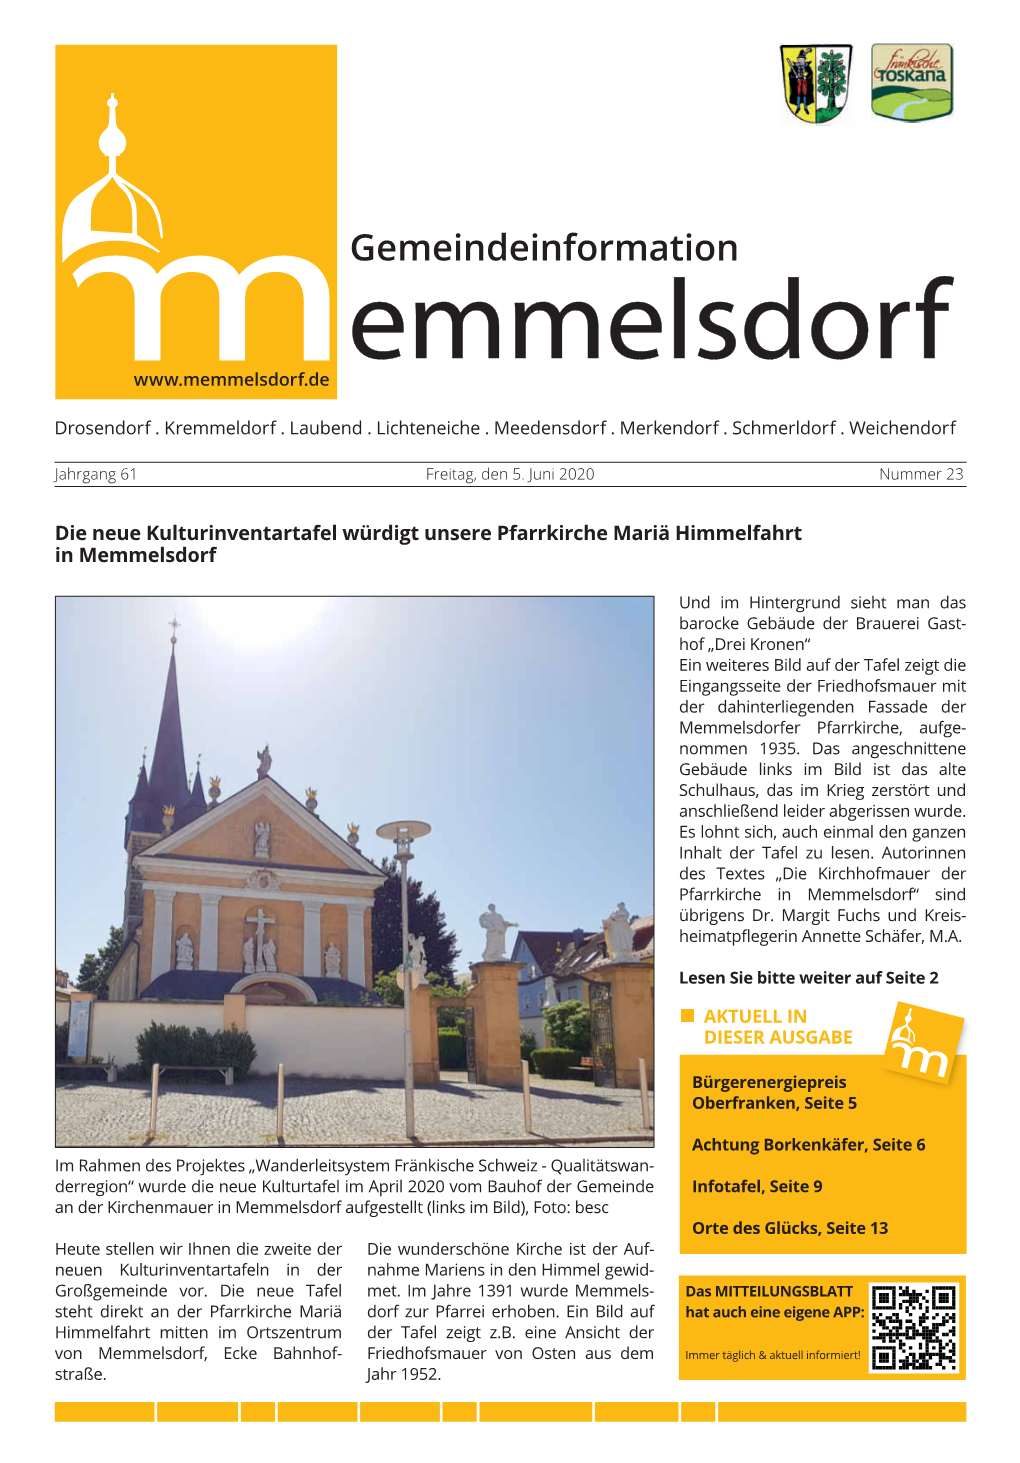 Die Neue Kulturinventartafel Würdigt Unsere Pfarrkirche Mariä Himmelfahrt in Memmelsdorf